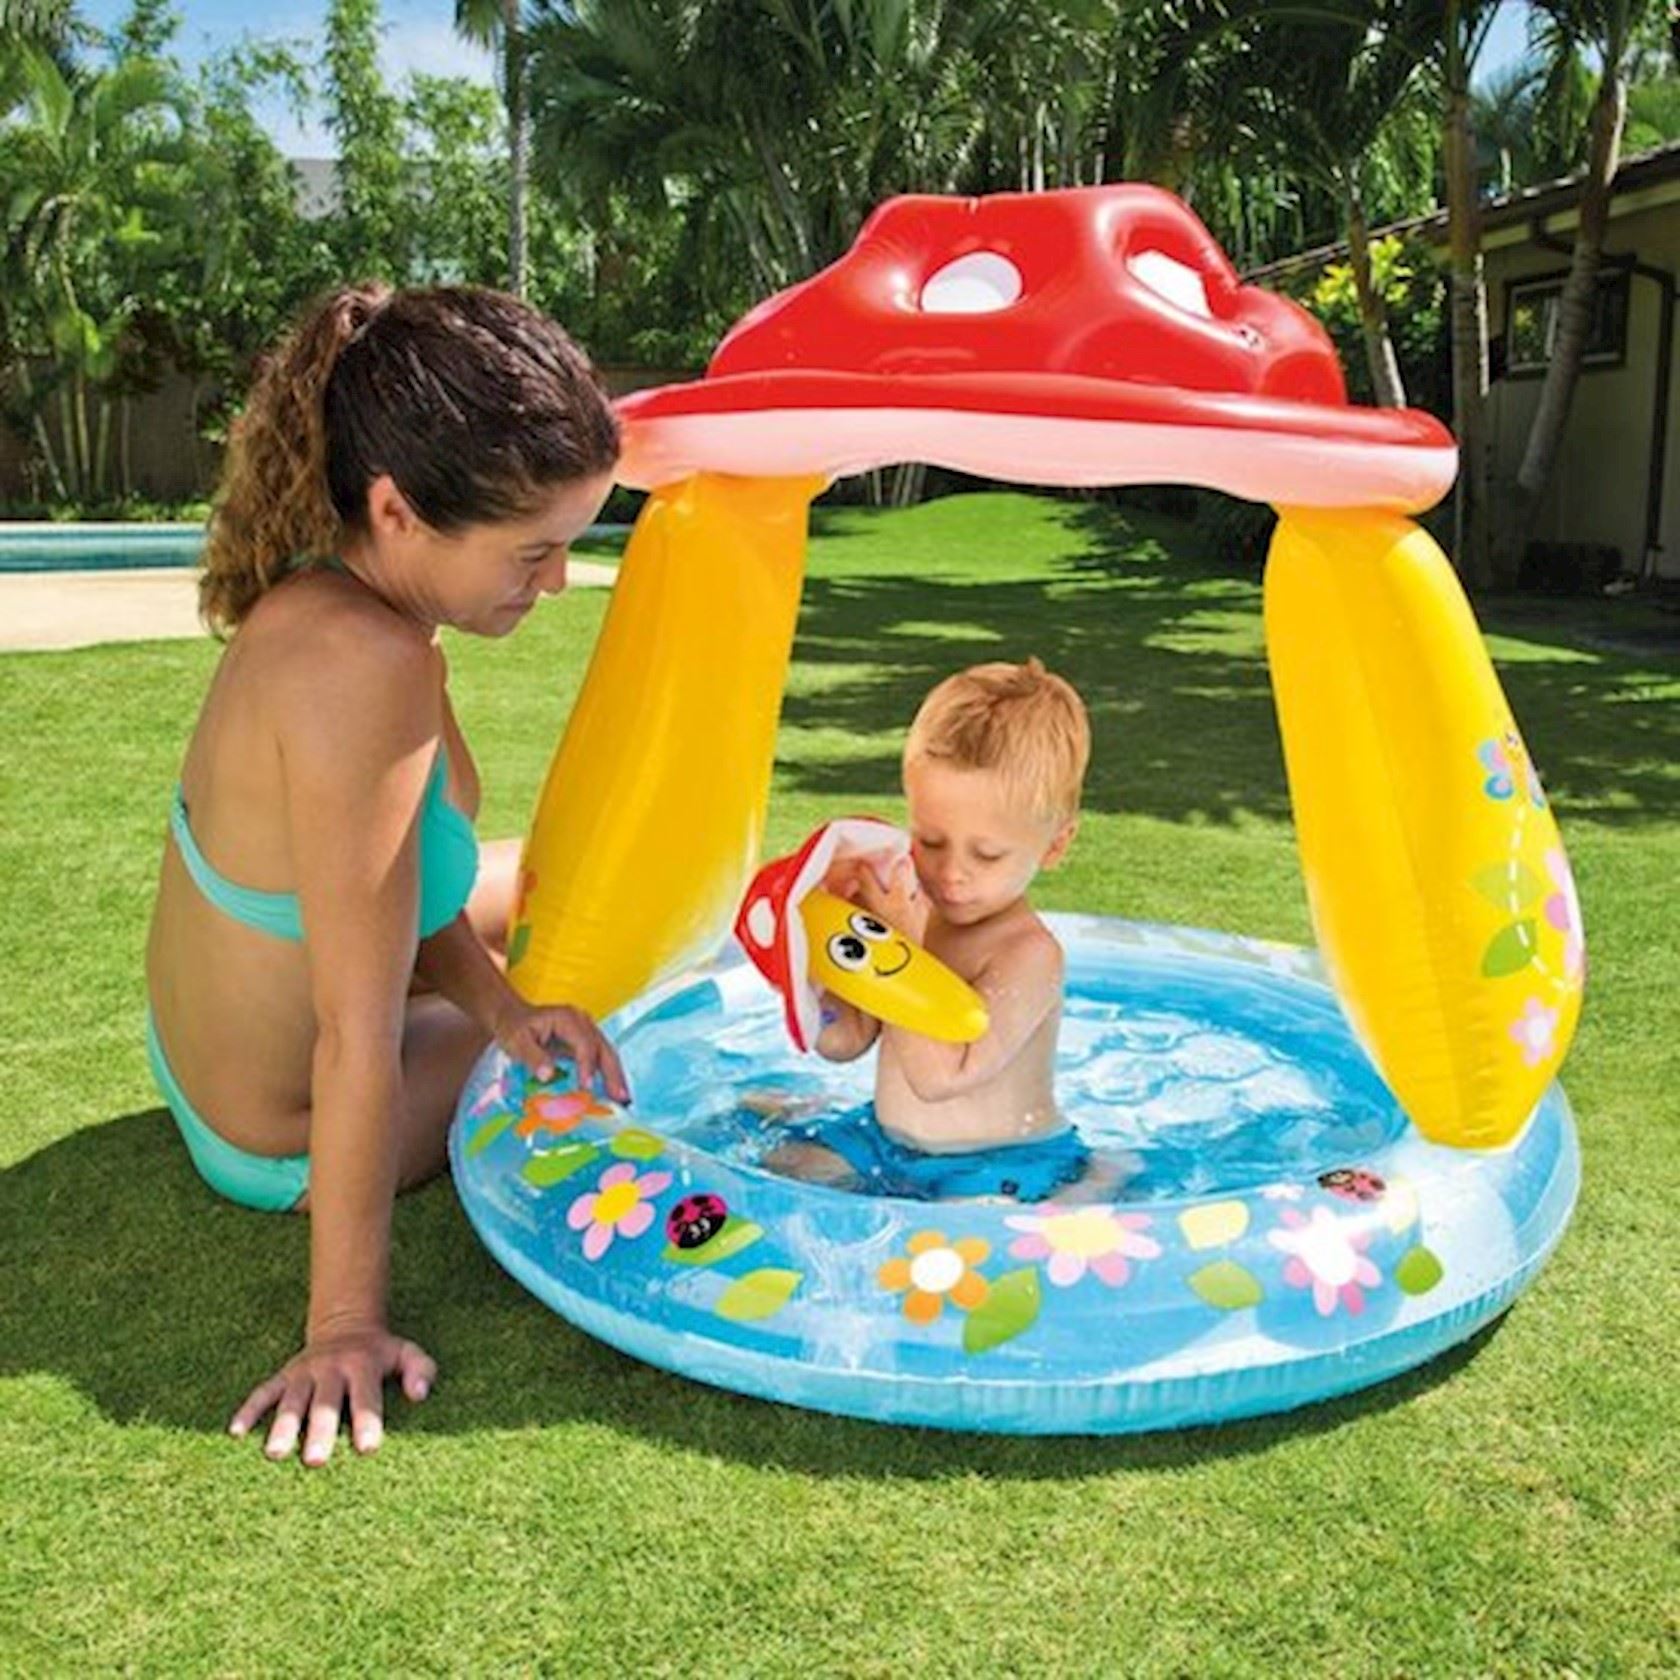 Intex Babyzwembad Paddestoel 102x89cm - Hermie.com - Alles voor uw huis & tuin online!